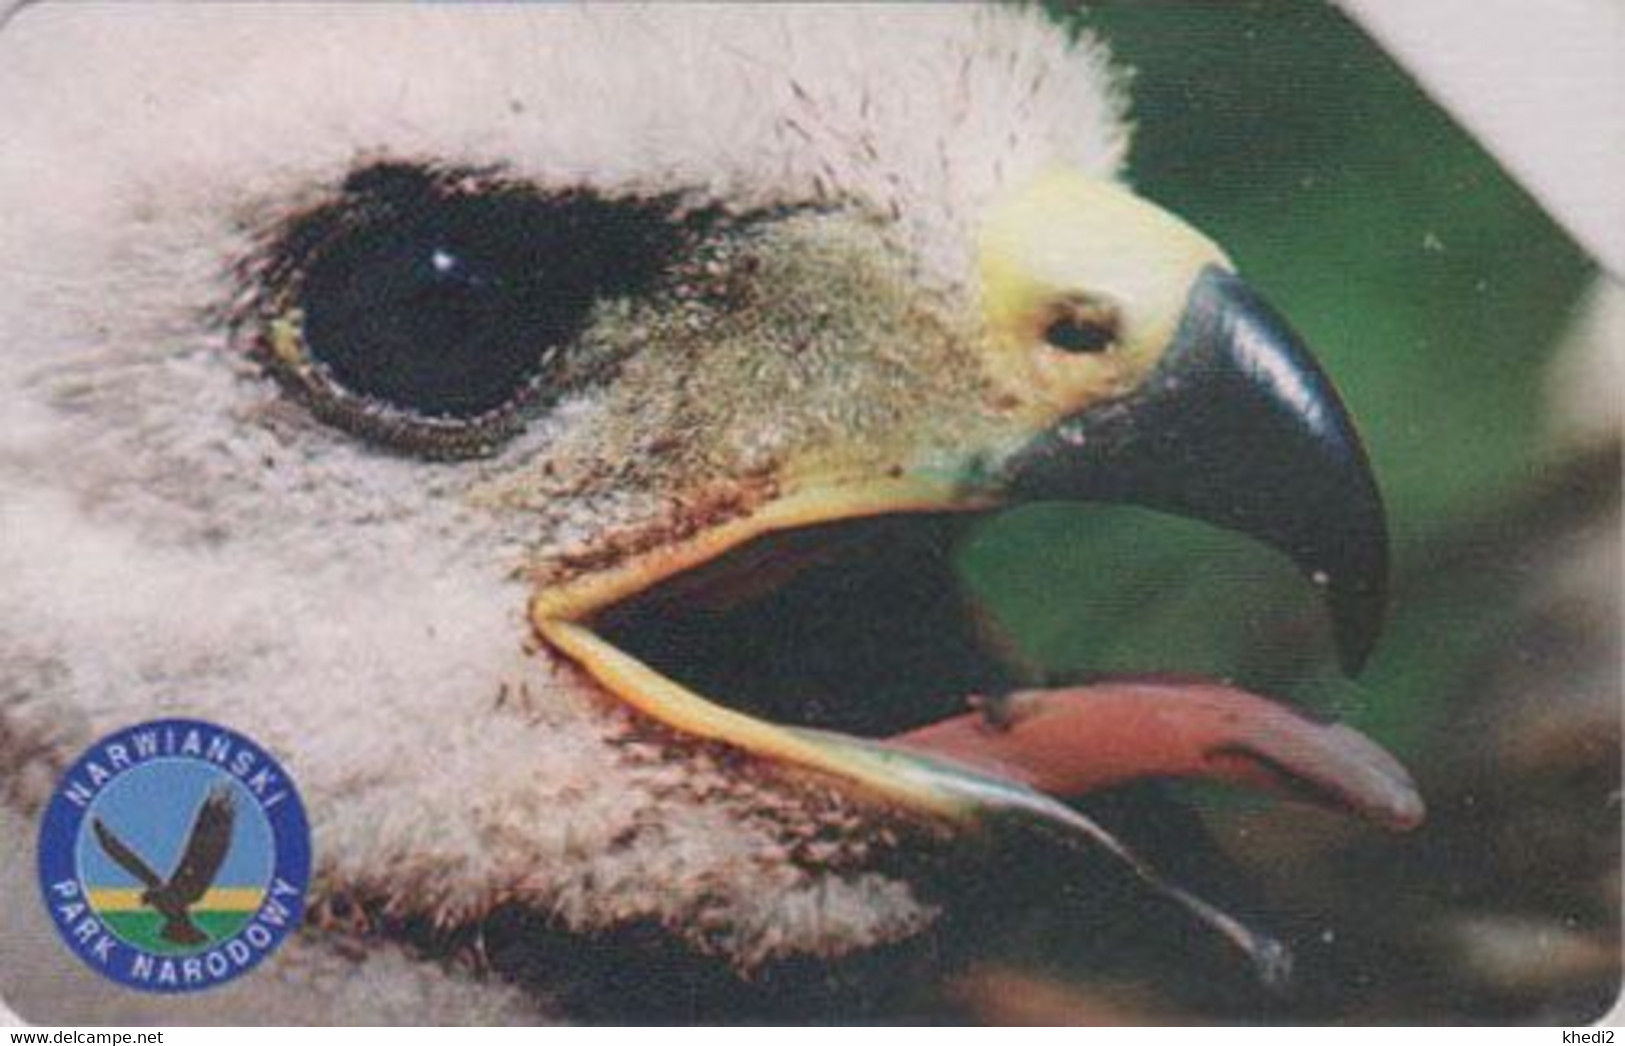 TC POLOGNE - ANIMAL / Série Narwianski Park 2/7 - OISEAU -  BUSE - BUSSARD Raptor Eagle BIRD - POLAND Phonecard - 5278 - Eagles & Birds Of Prey